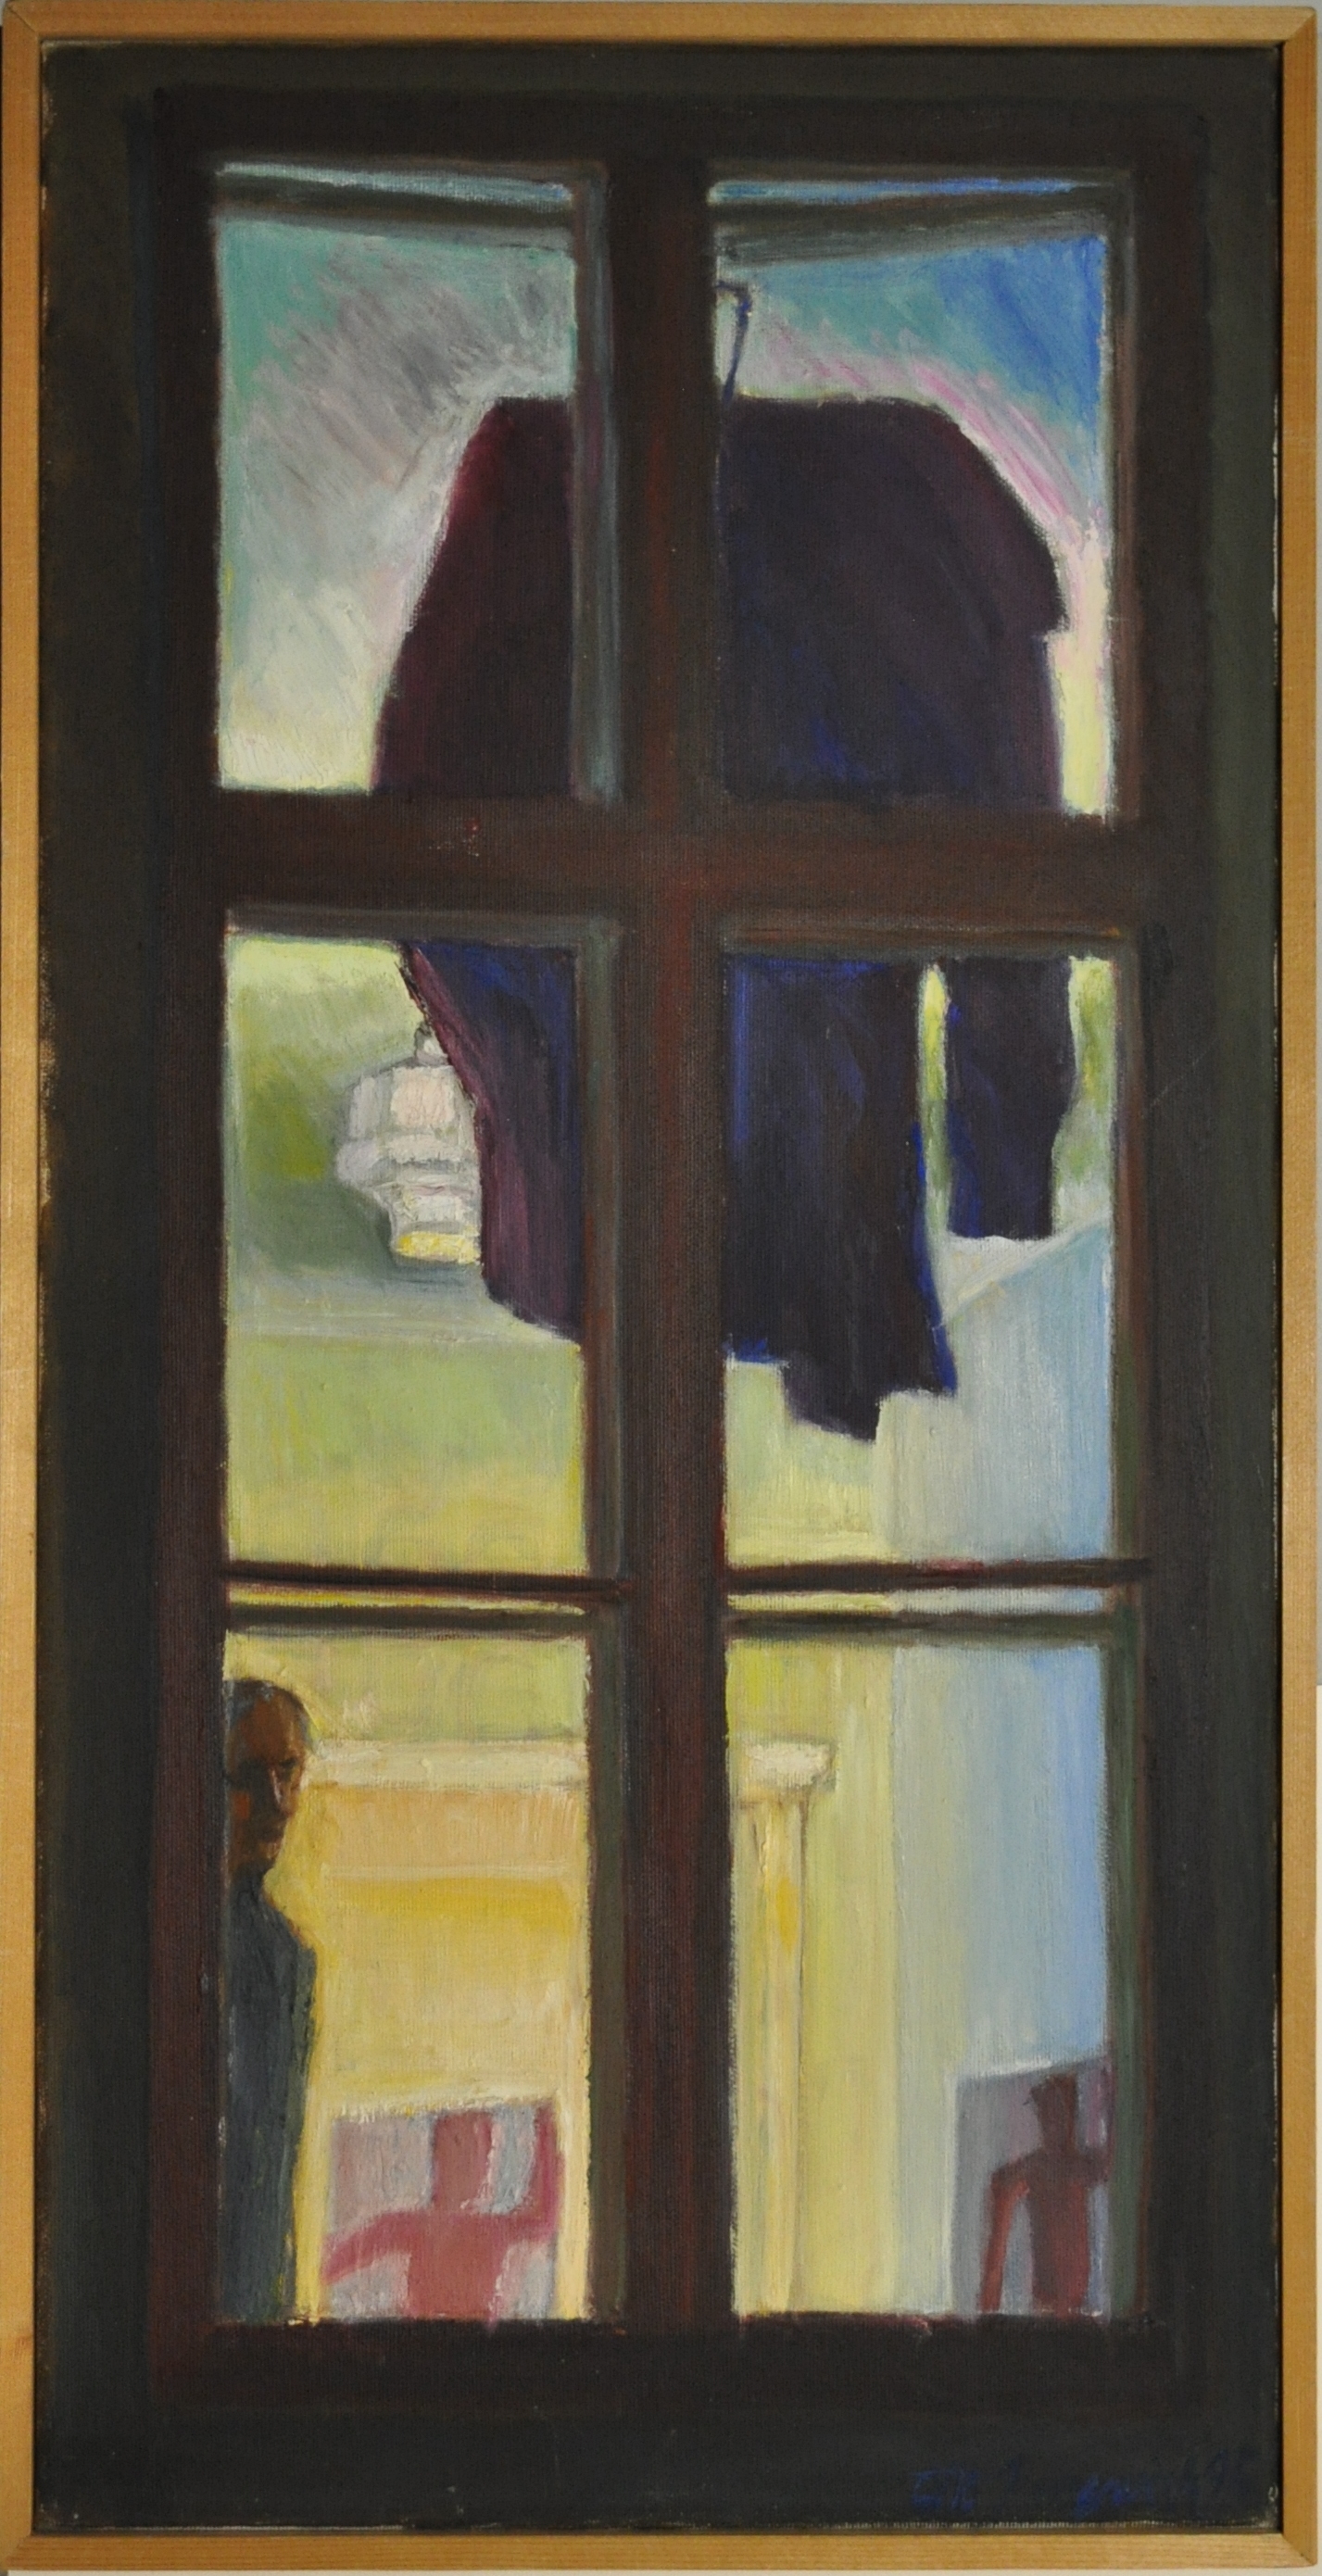 Mantel am Fensterkreuz, 1995